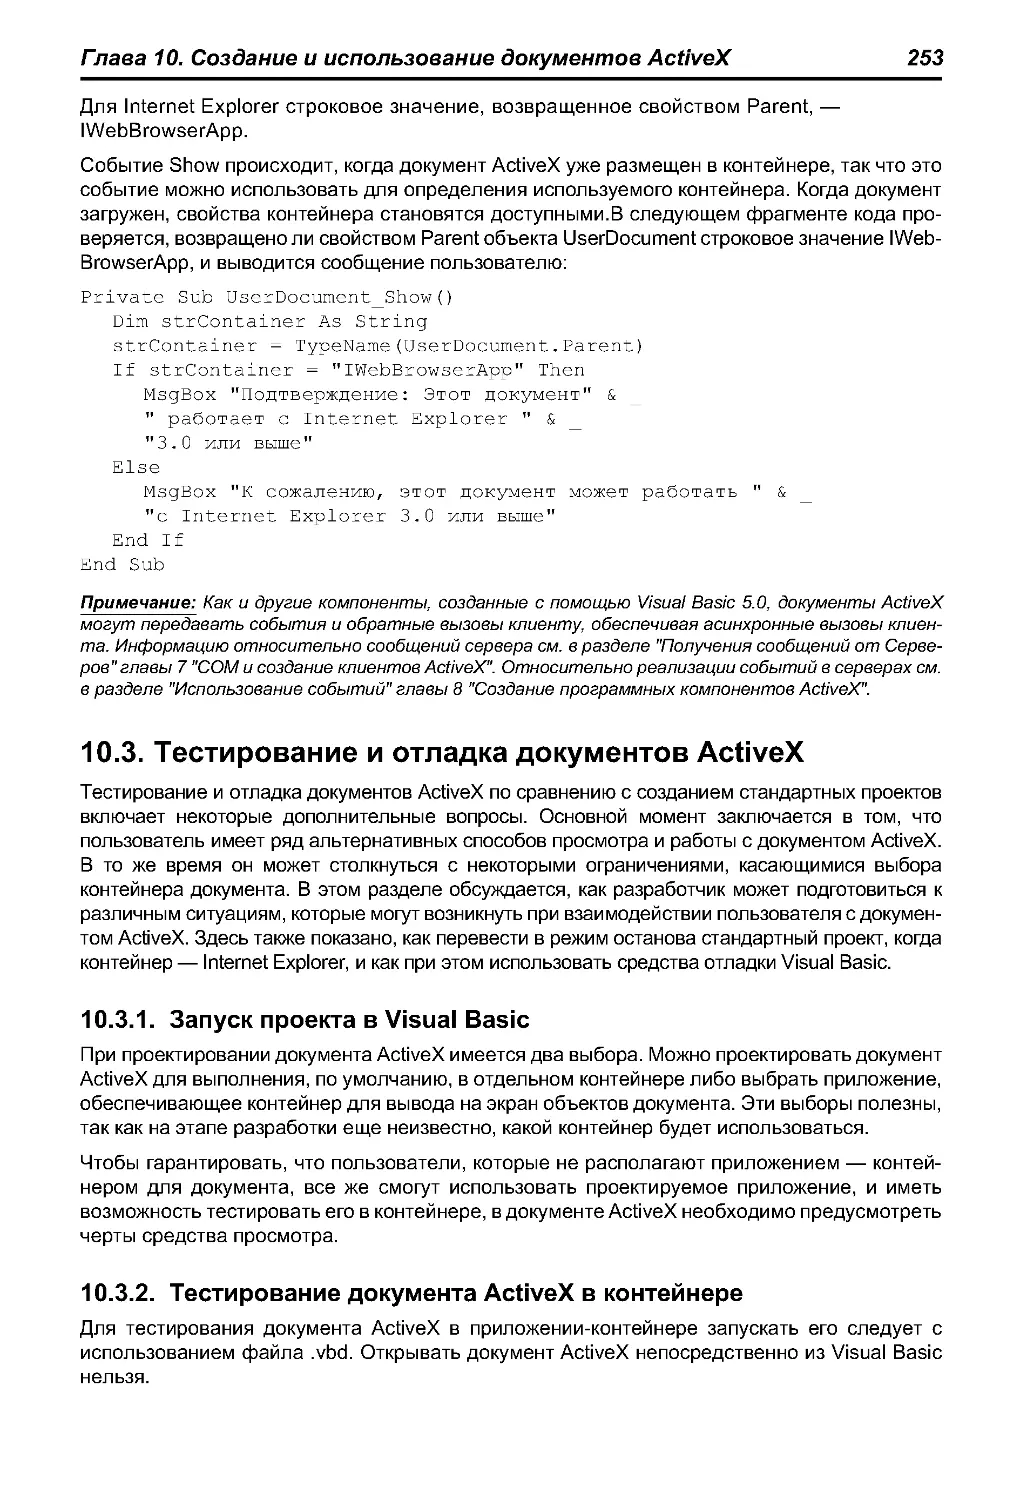 10.3. Тестирование и отладка документов ActiveX
10.3.2. Тестирование документа ActiveX в контейнере